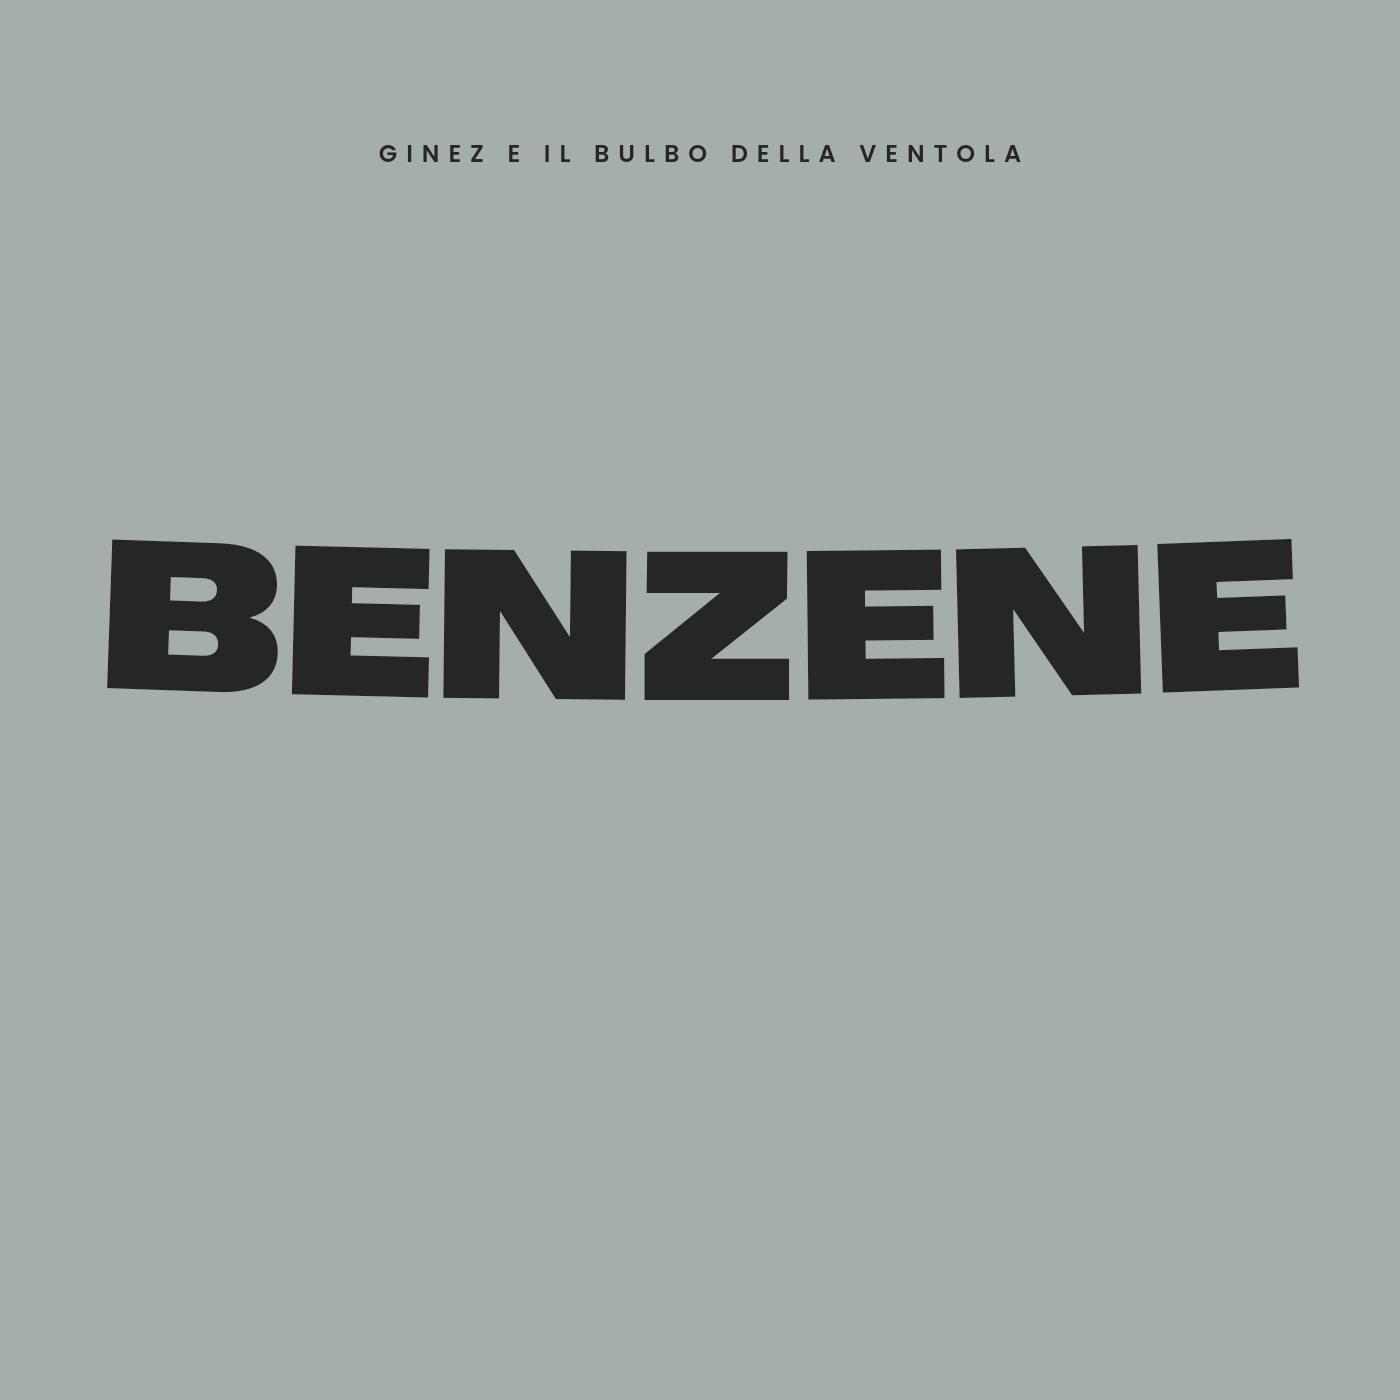 Foto 1 - Ginez e il bulbo della ventola - “Benzene”